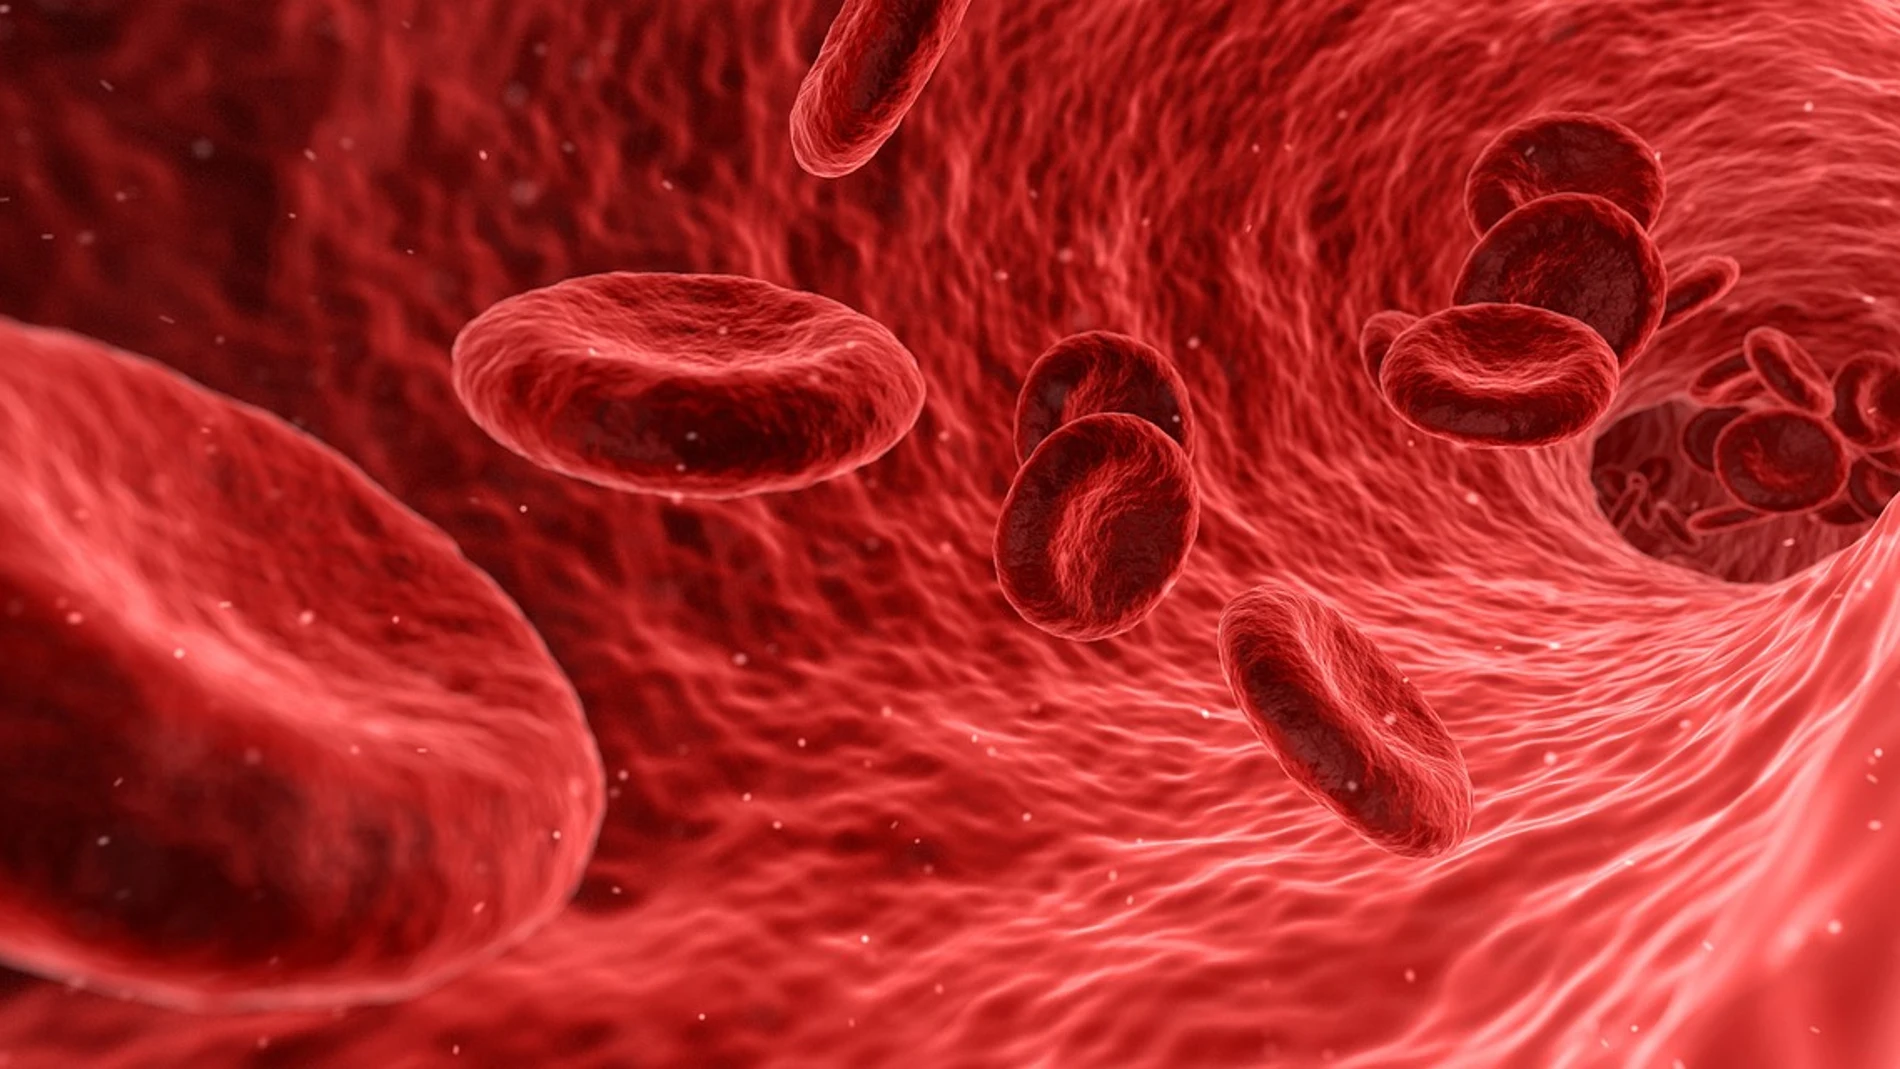 Foto ampliada de los glóbulos rojos de la sangre